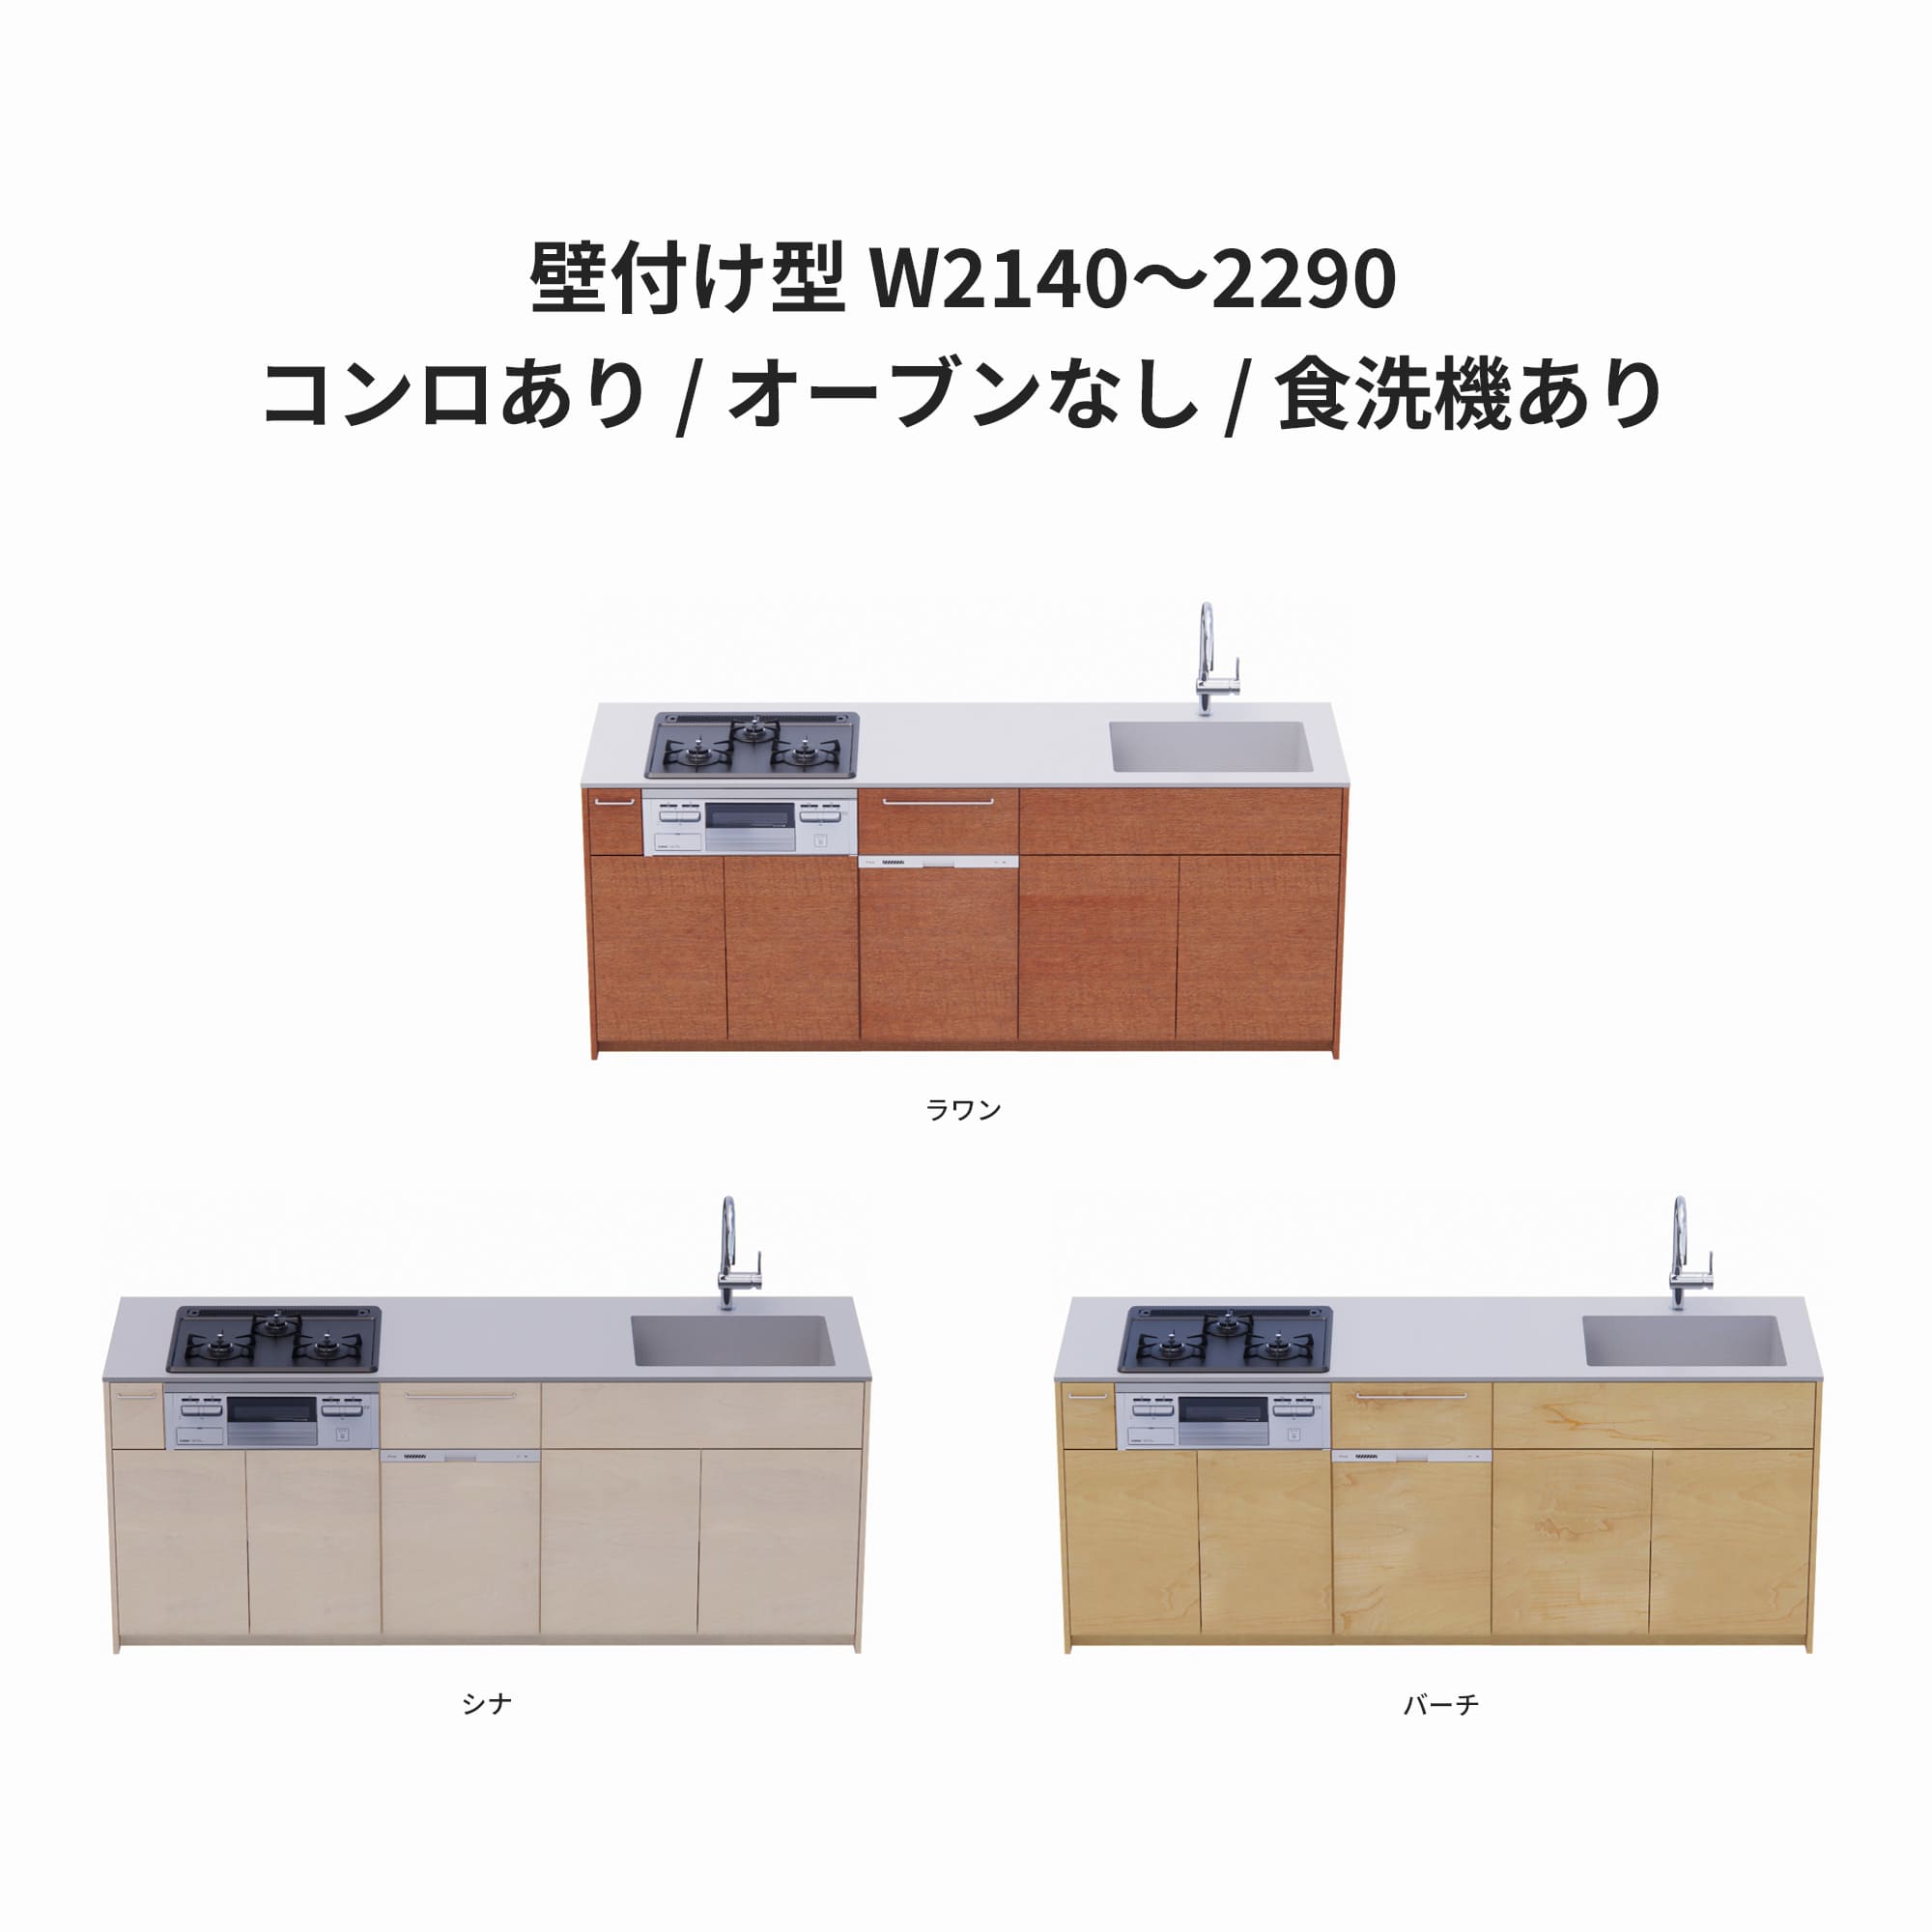 木製システムキッチン 壁付け型 W2140～2290・コンロあり / オーブンなし / 食洗機あり KB-KC022-20-G183 ラワン・シナ・バーチが選択できます